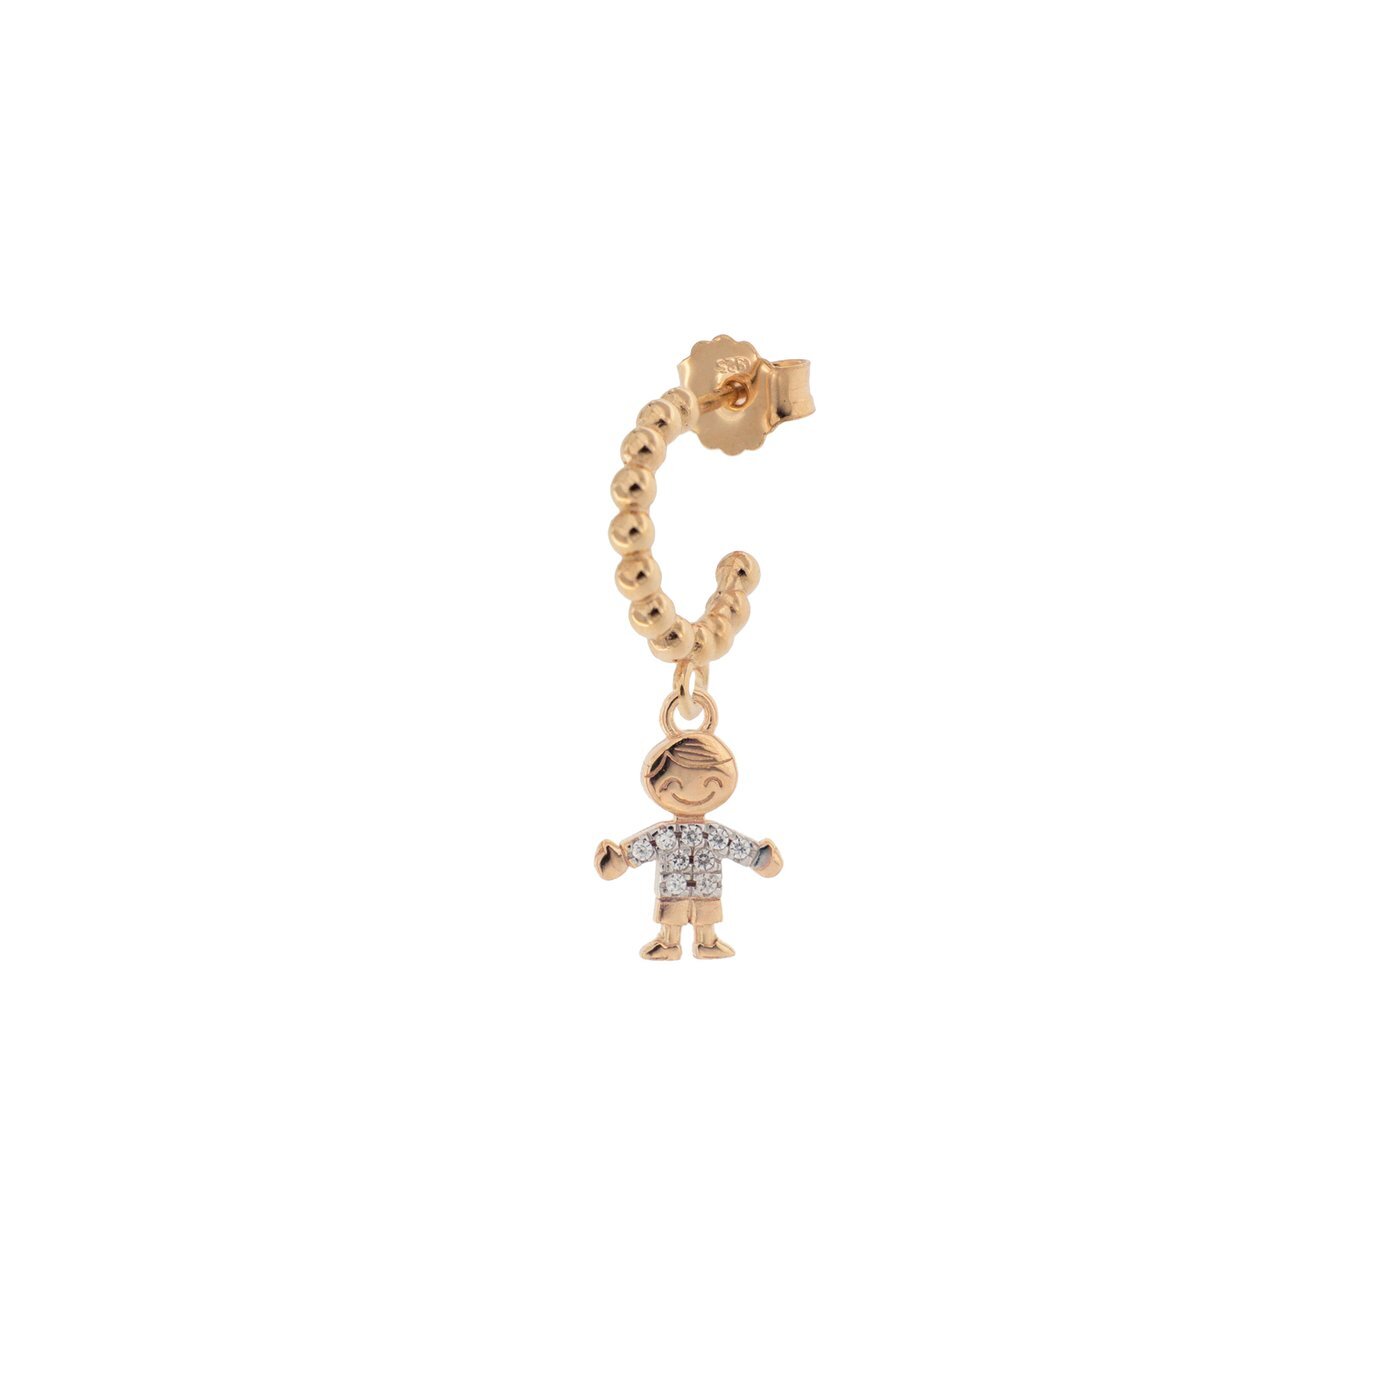 Rue Des Mille mono orecchino in argento 925 placcato in oro rosa 18 kt con soggetto "bimbo" e zirconi bianchi - Codice mono orecchino: ORZ-007 BIMBO